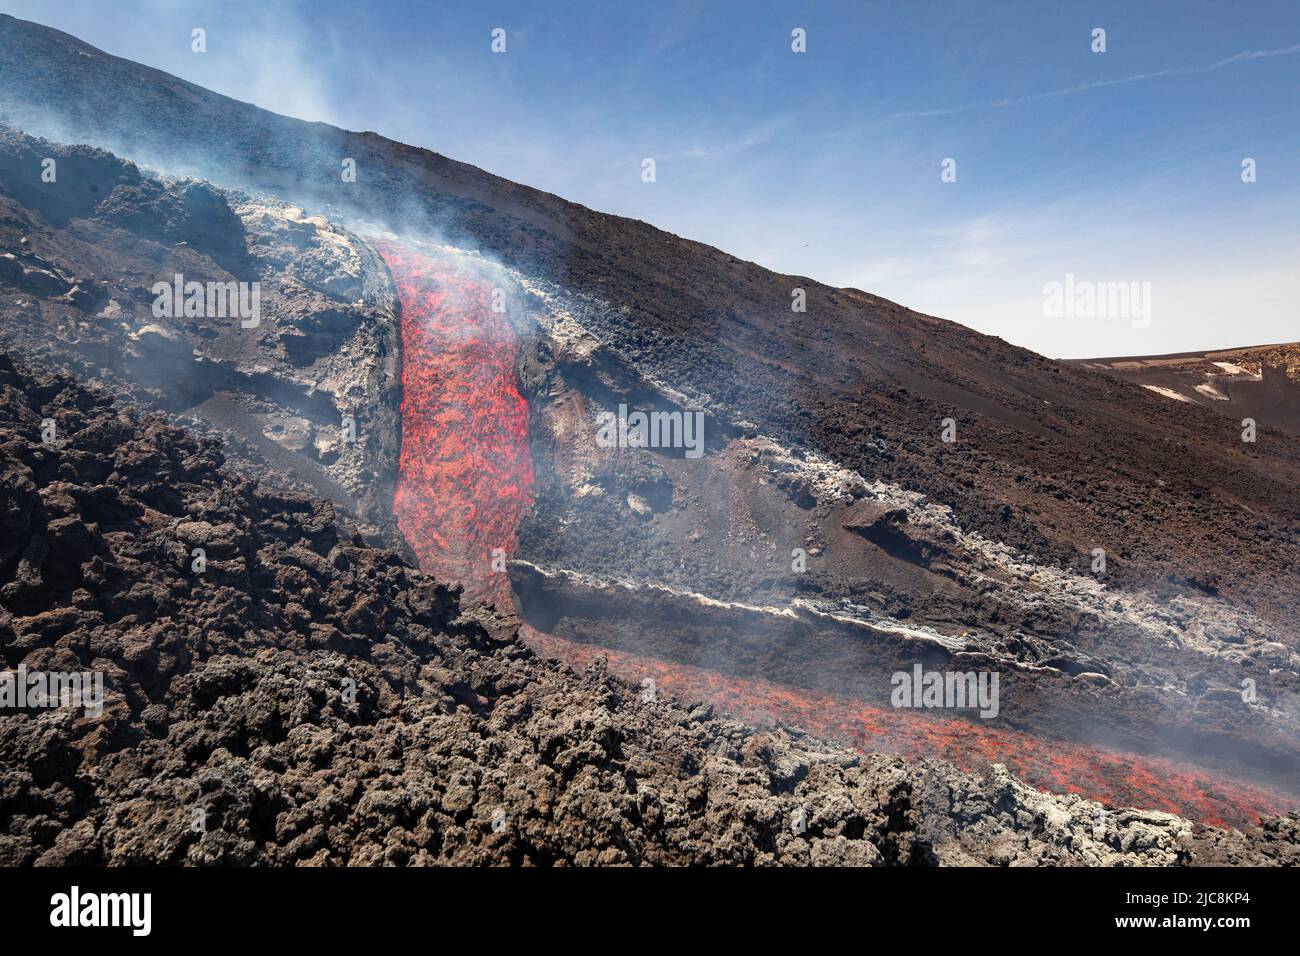 Flujo de lava etna: La caída de lava sobre el volcán de Sicilia en Valle del Bove con humo y el canal de flujo de lava Foto de stock